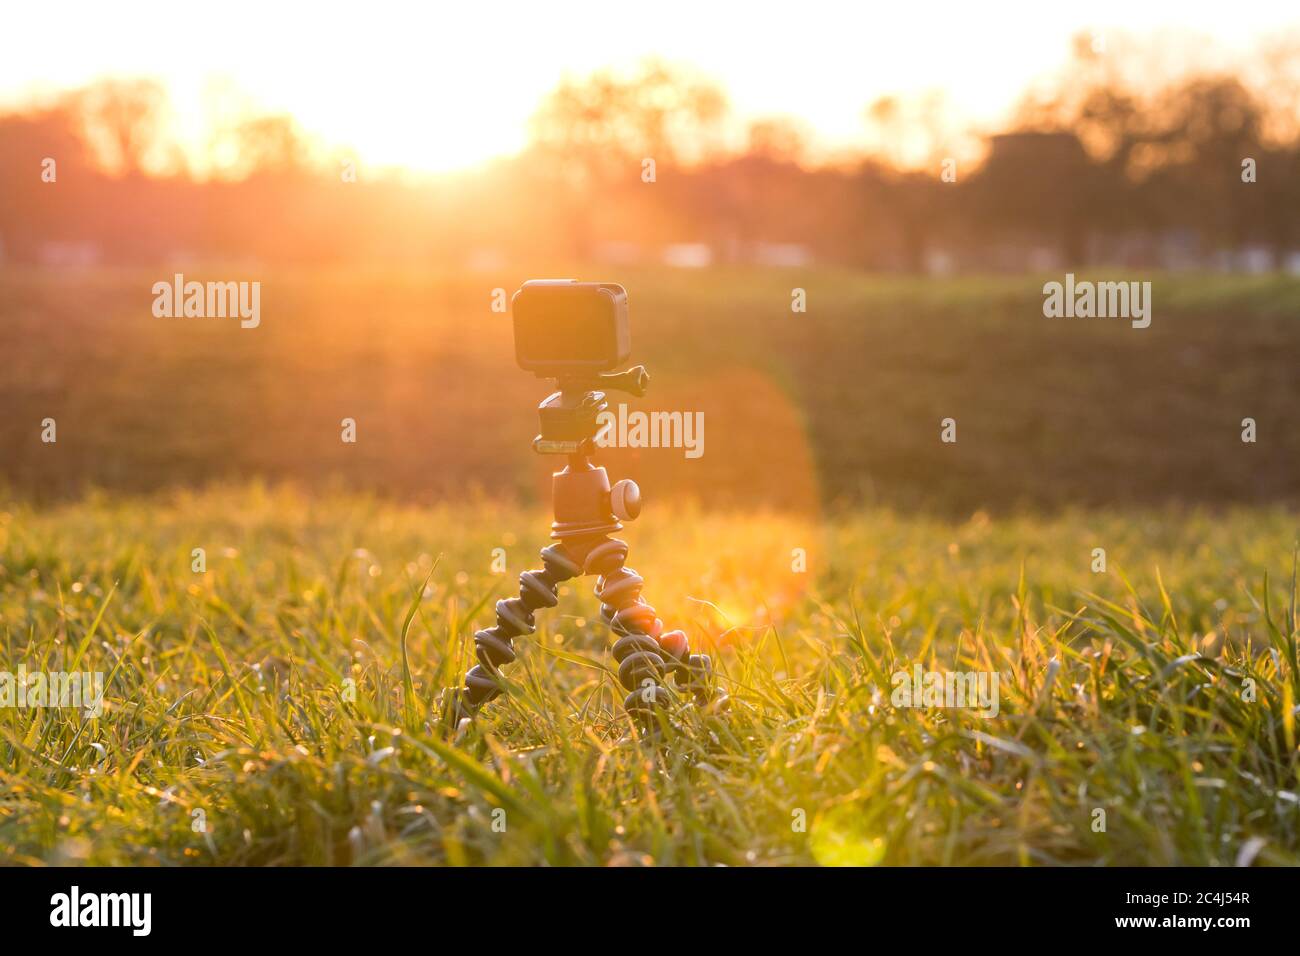 Cámara de acción en un prado de hierba que filmaba hermosa y dramática puesta de sol Foto de stock